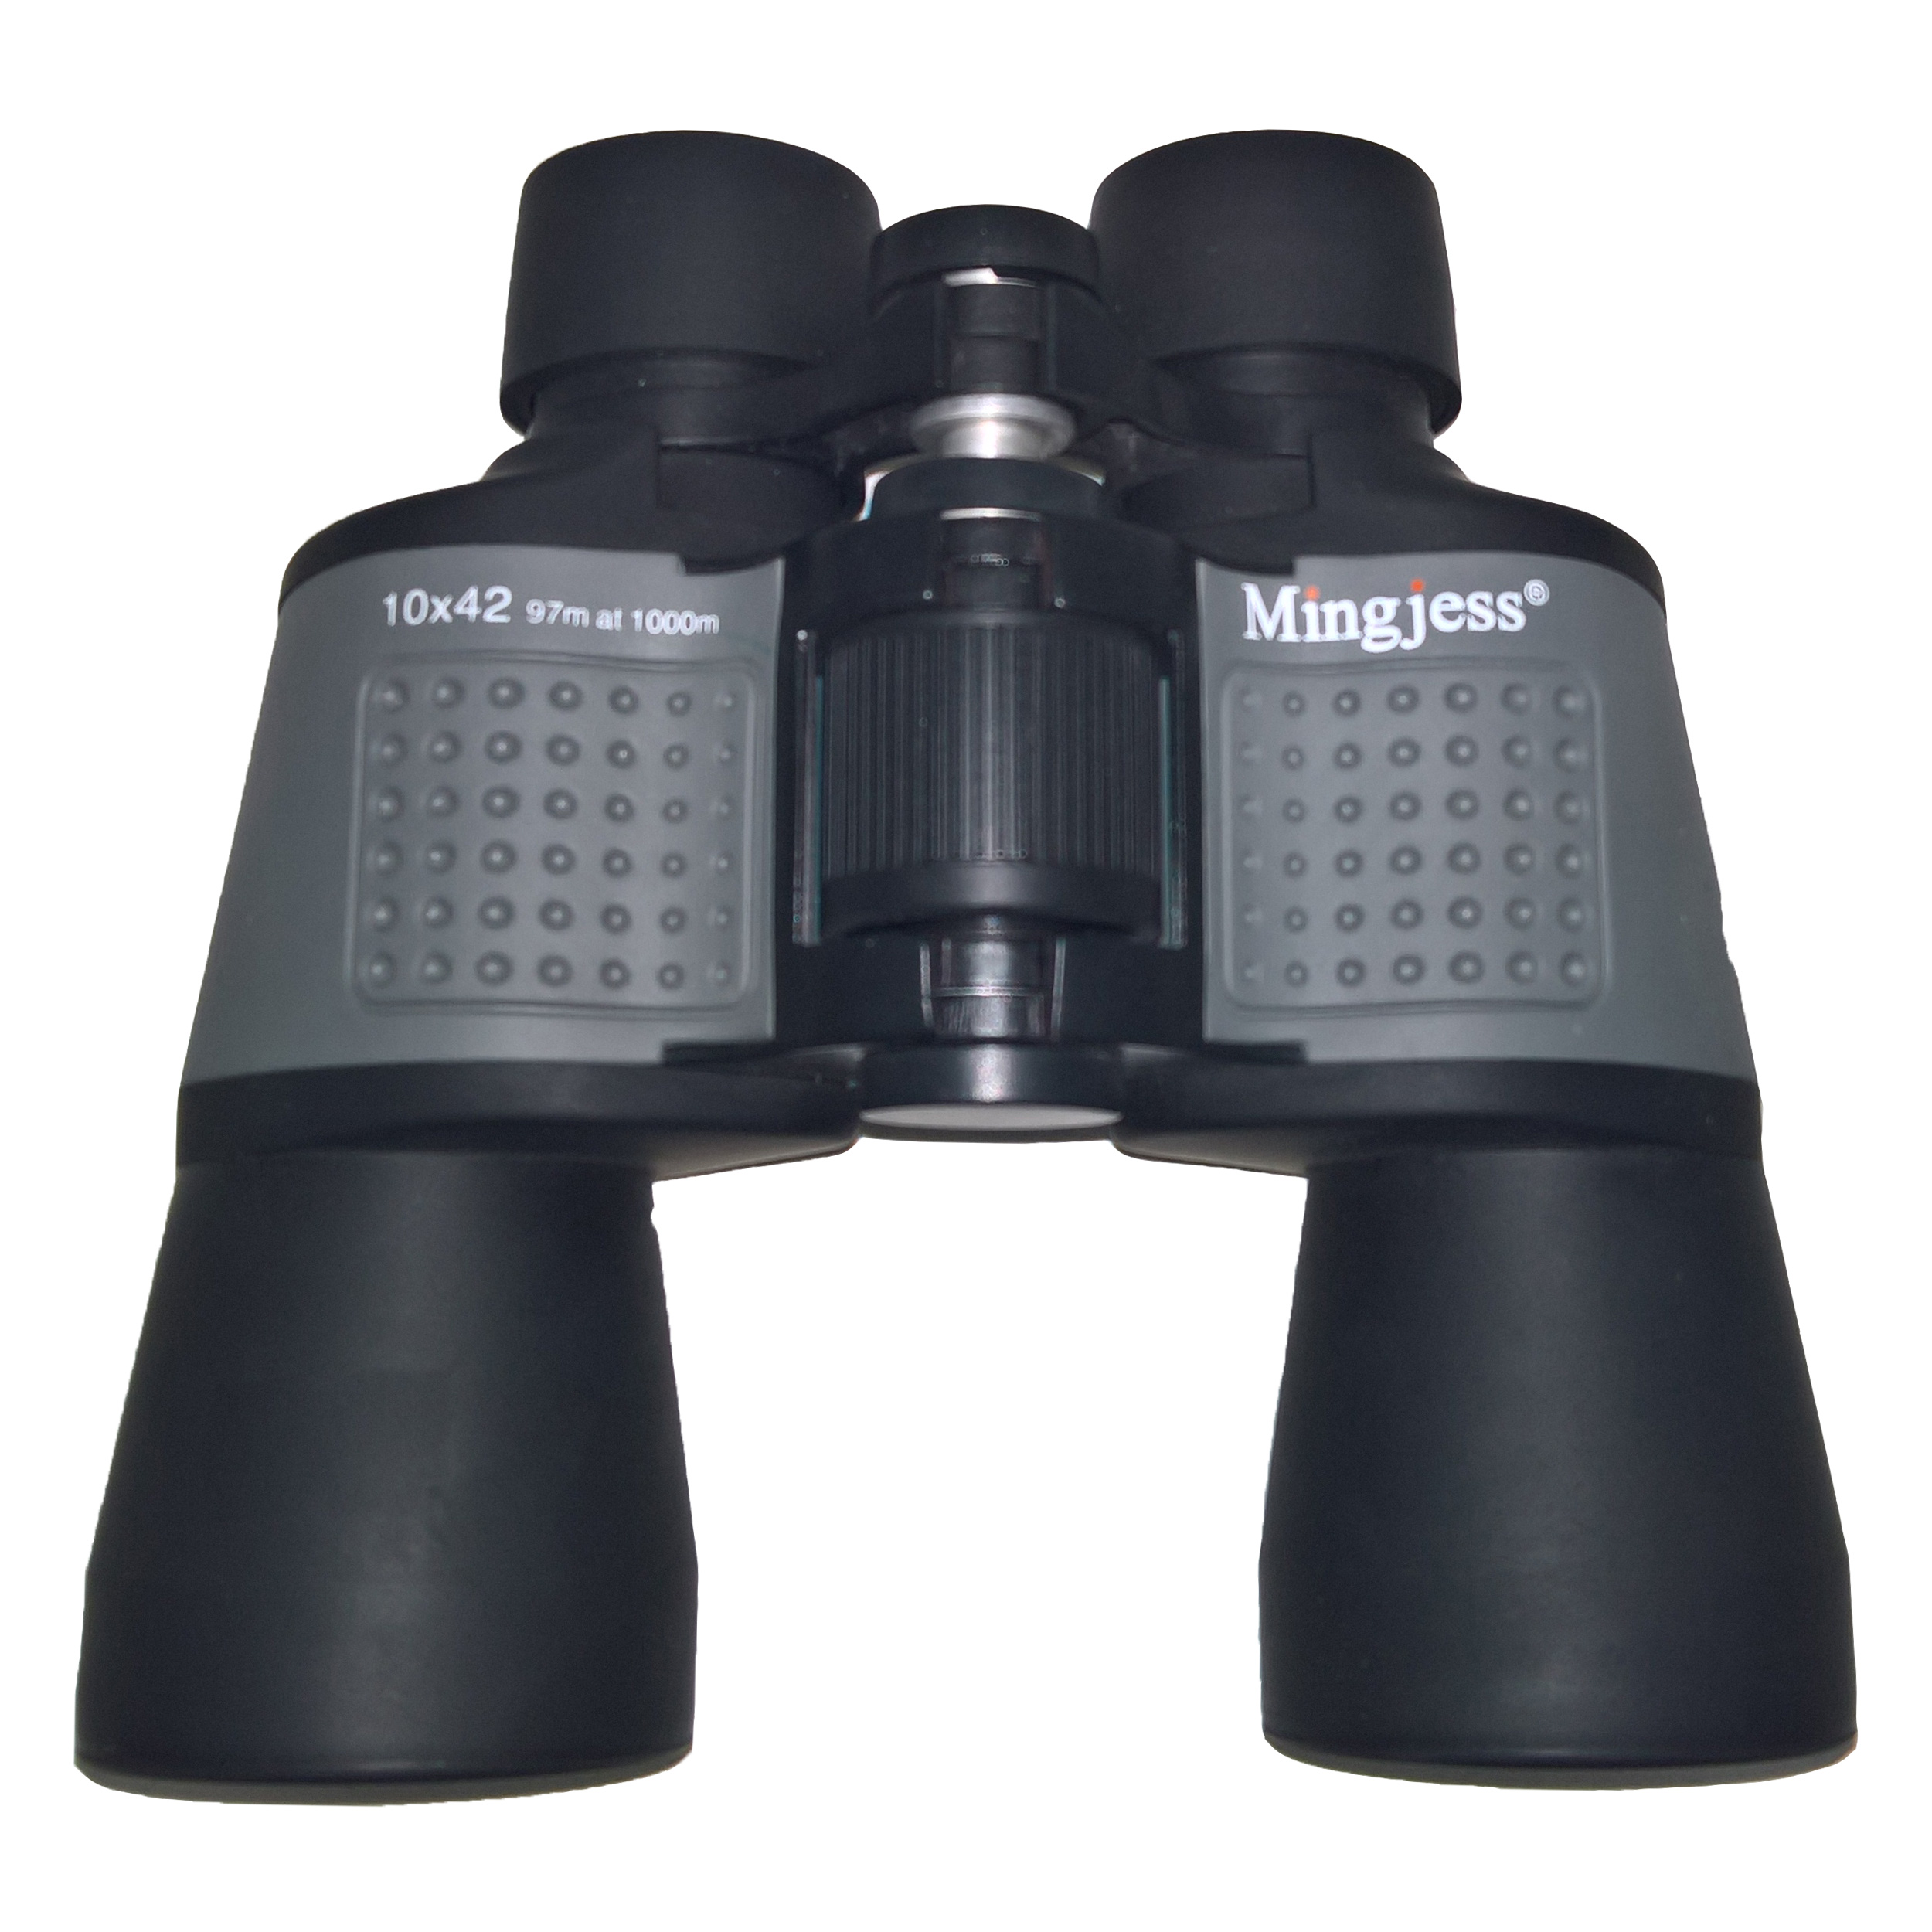 دوربین دو چشمی مینگجس مدل M-97 42X10  